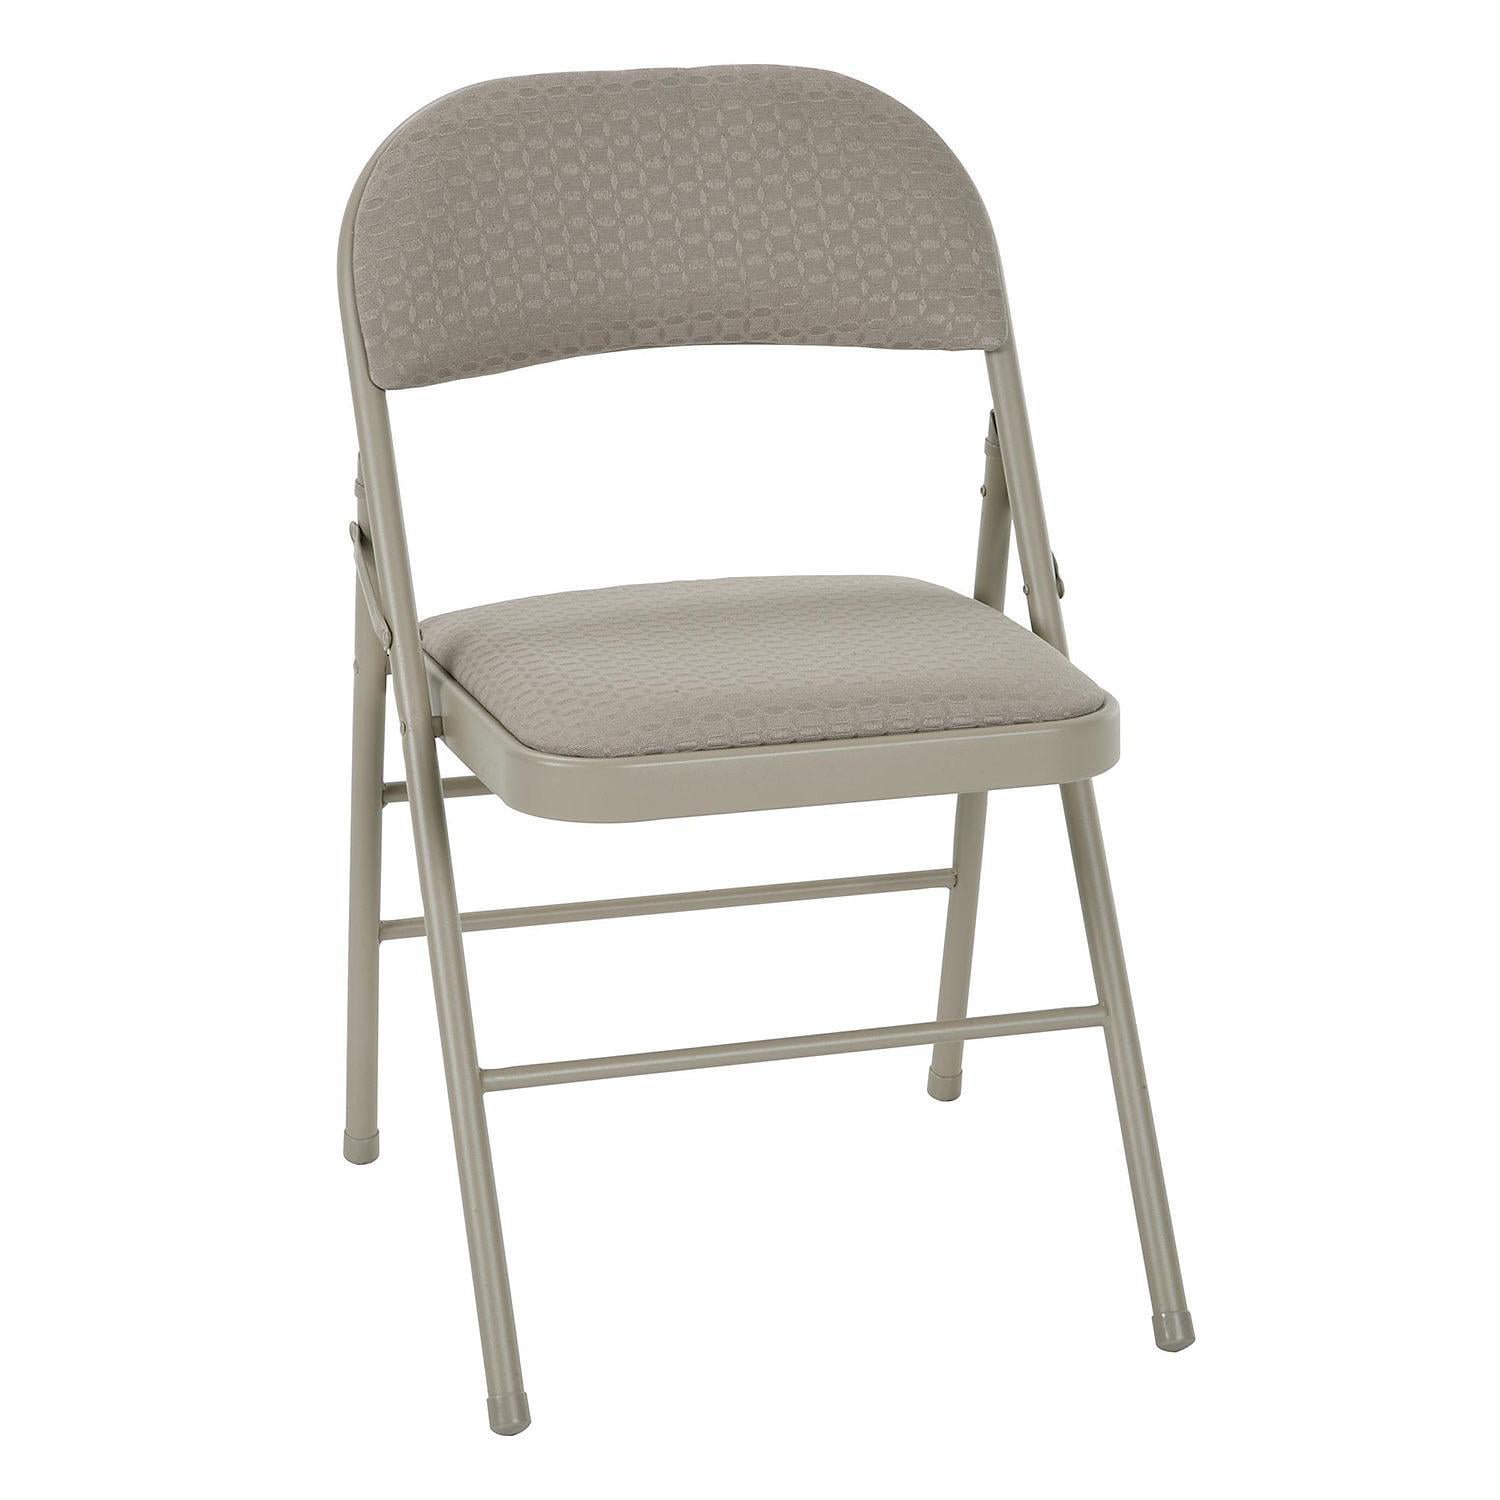 Недорогие складные стулья. Стул со спинкой. Стул складной металлический со спинкой. Складные мягкие стулья. Складные мягкие стулья со спинкой.